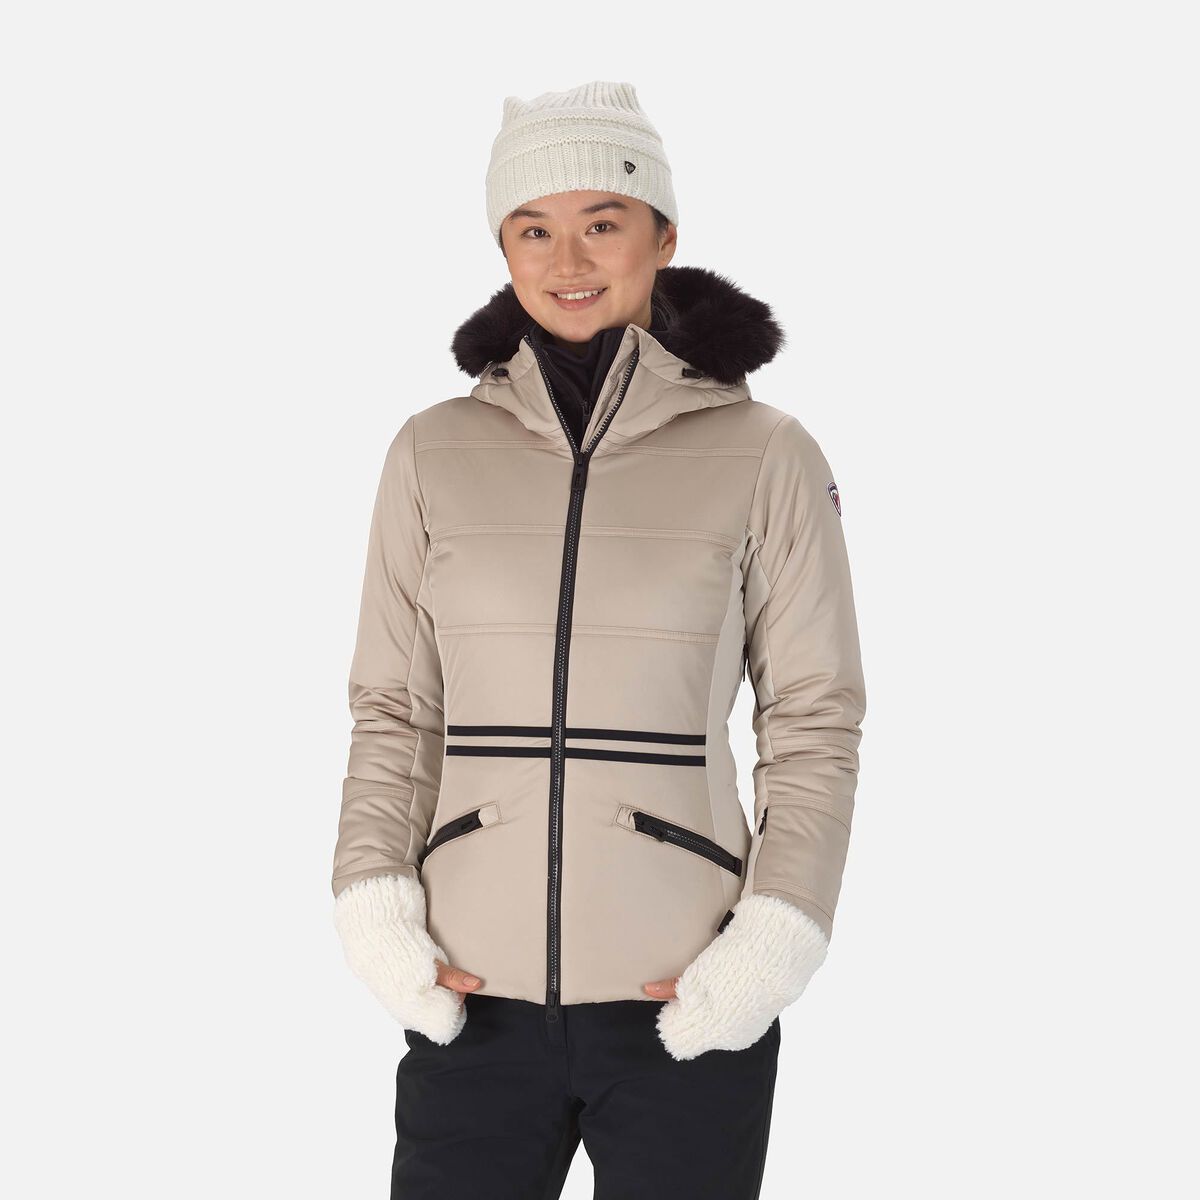 Rossignol Women's ROC Ski Jacket | Jackets Women | Rossignol